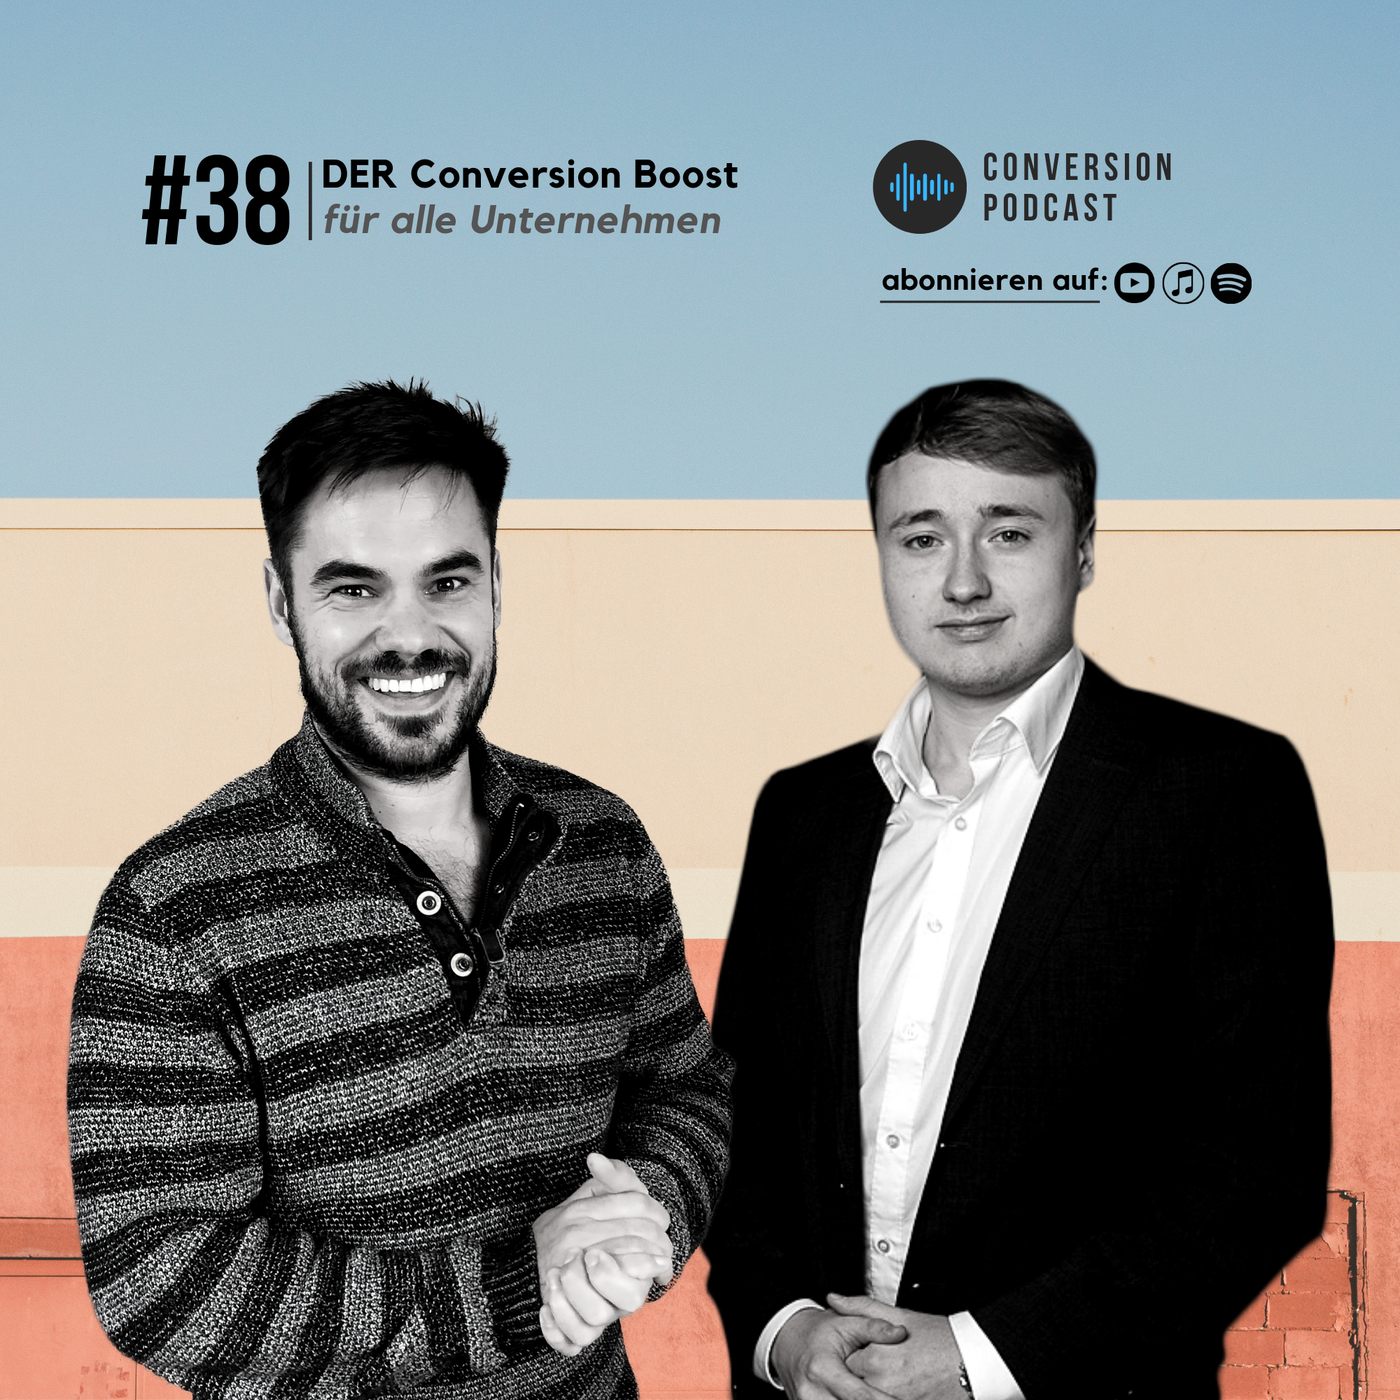 DER Conversion Boost für dein Unternehmen | #38 Conversion Podcast